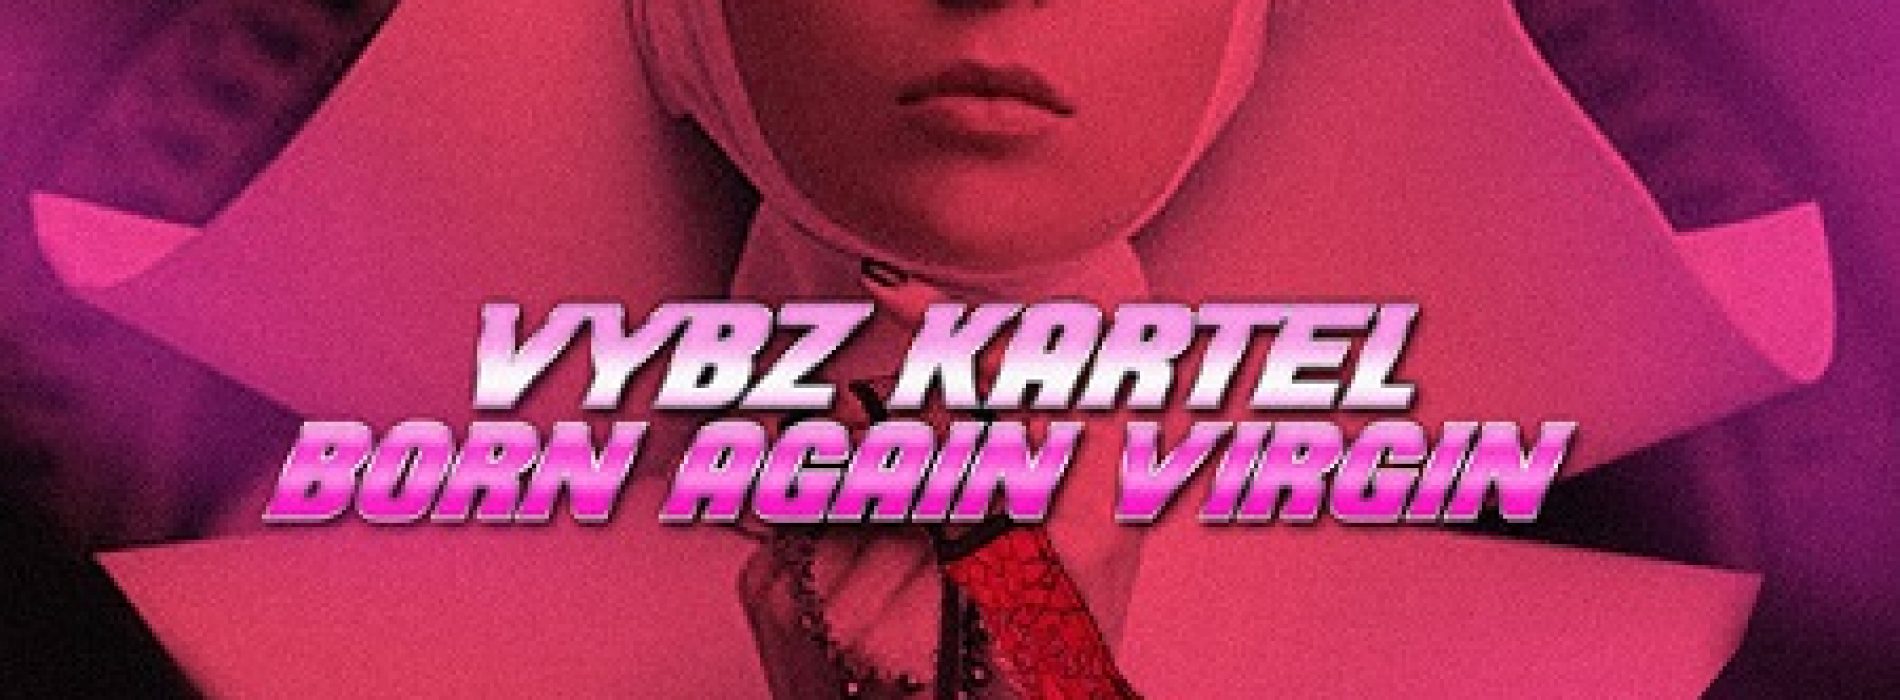 VYBZ KARTEL dévoile son clip – Born Again Virgin – Aôut 2017